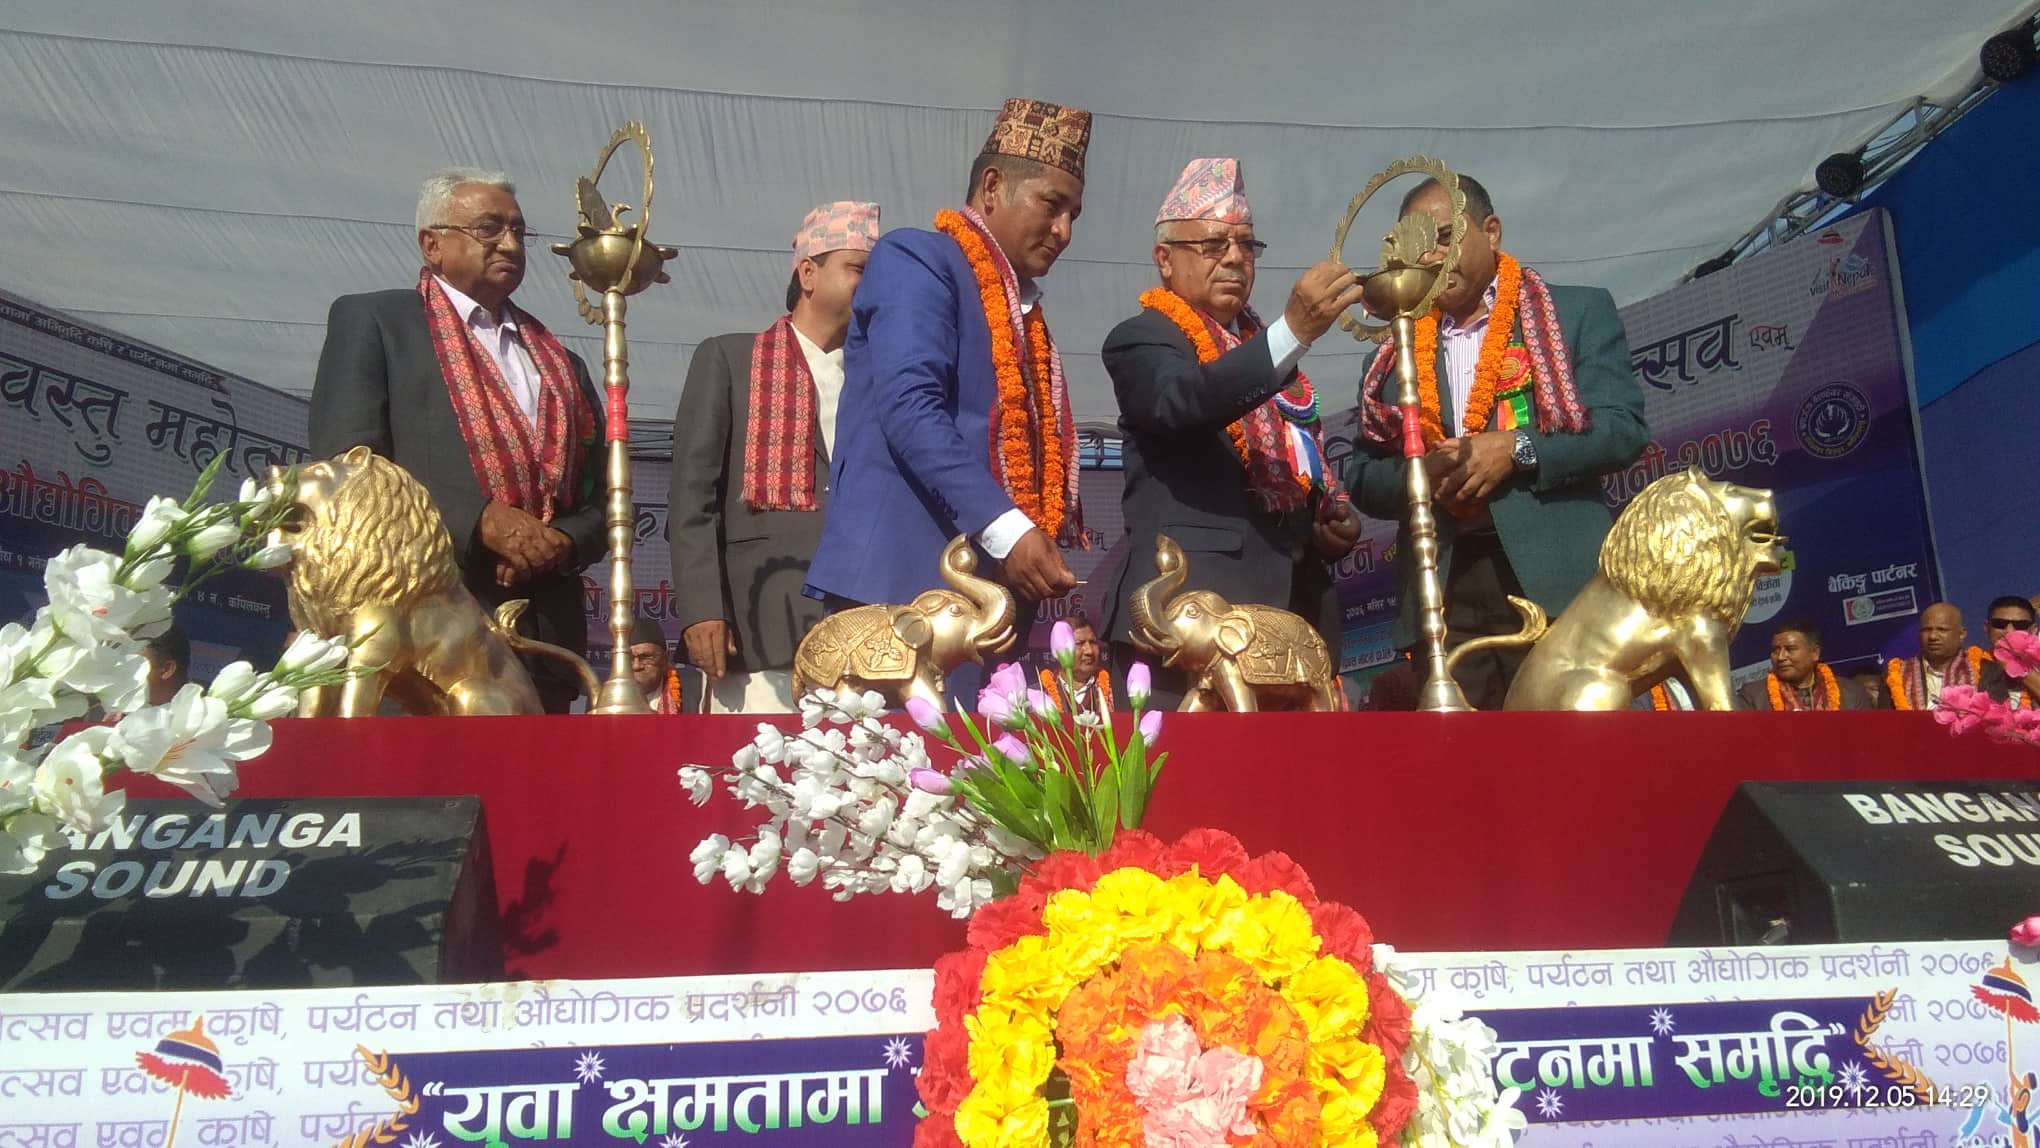 सरकार जनताको सेवक बन्नुपर्छः माधव नेपाल